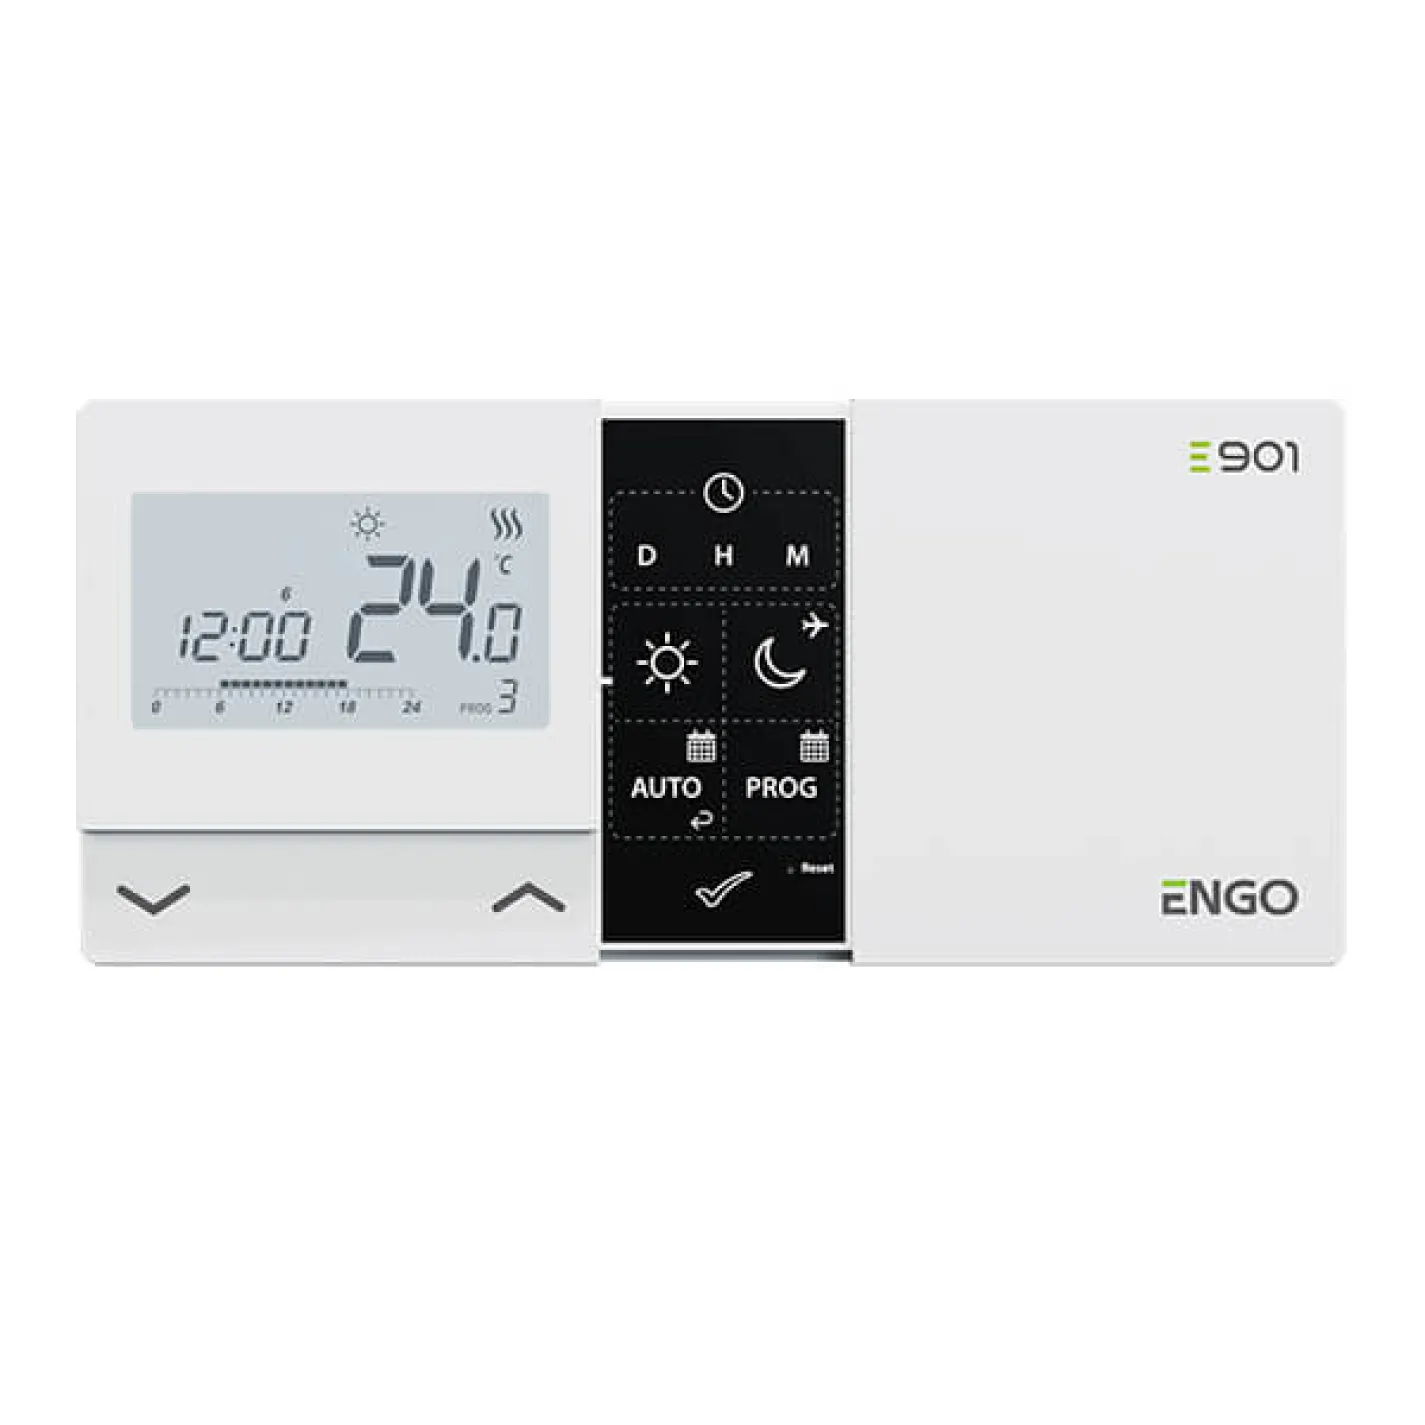 Программируемый проводной терморегулятор Engo E901 - Фото 1